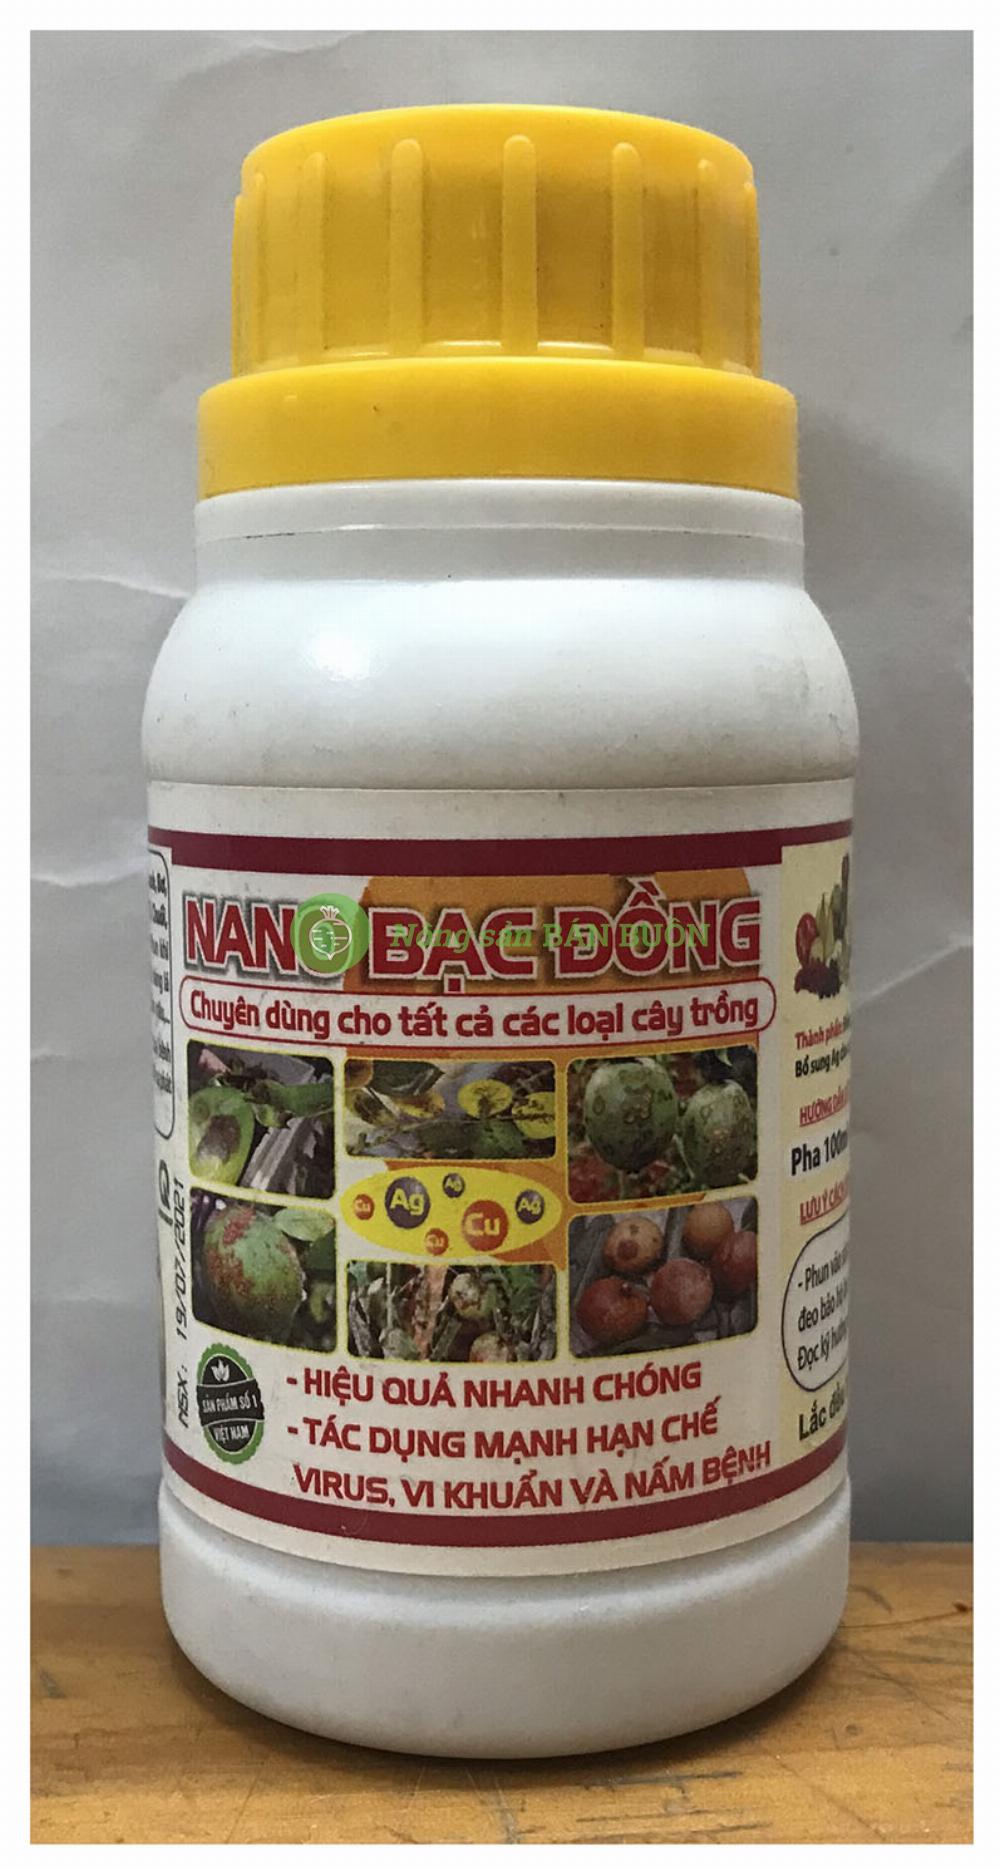 NANO BẠC ĐỒNG chuyên dùng cho tất cả các loại cây trồng , hiệu quả nhanh, tác dụng mạnh hạn chế virut, vi khuẩn,.. thể tích:100ml